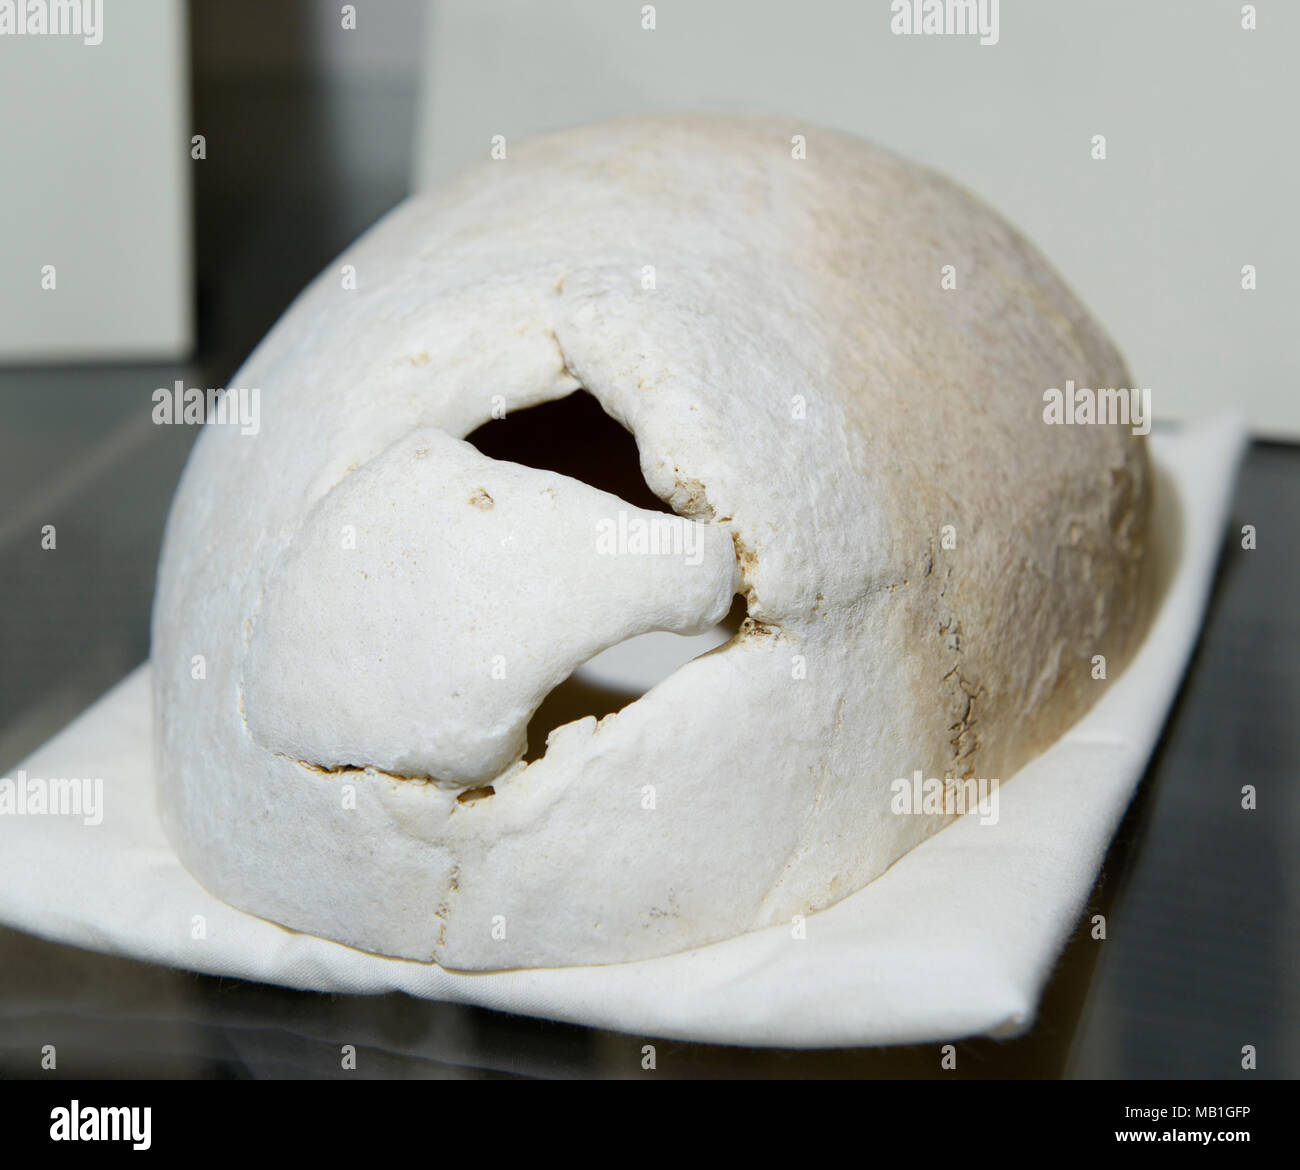 Phineas Gage cráneo, en exhibición en la Escuela de Medicina de Harvard. Agujero en el cráneo muestra dónde prensarlo hierro atravesó su lóbulo frontal en 1848. Foto de stock